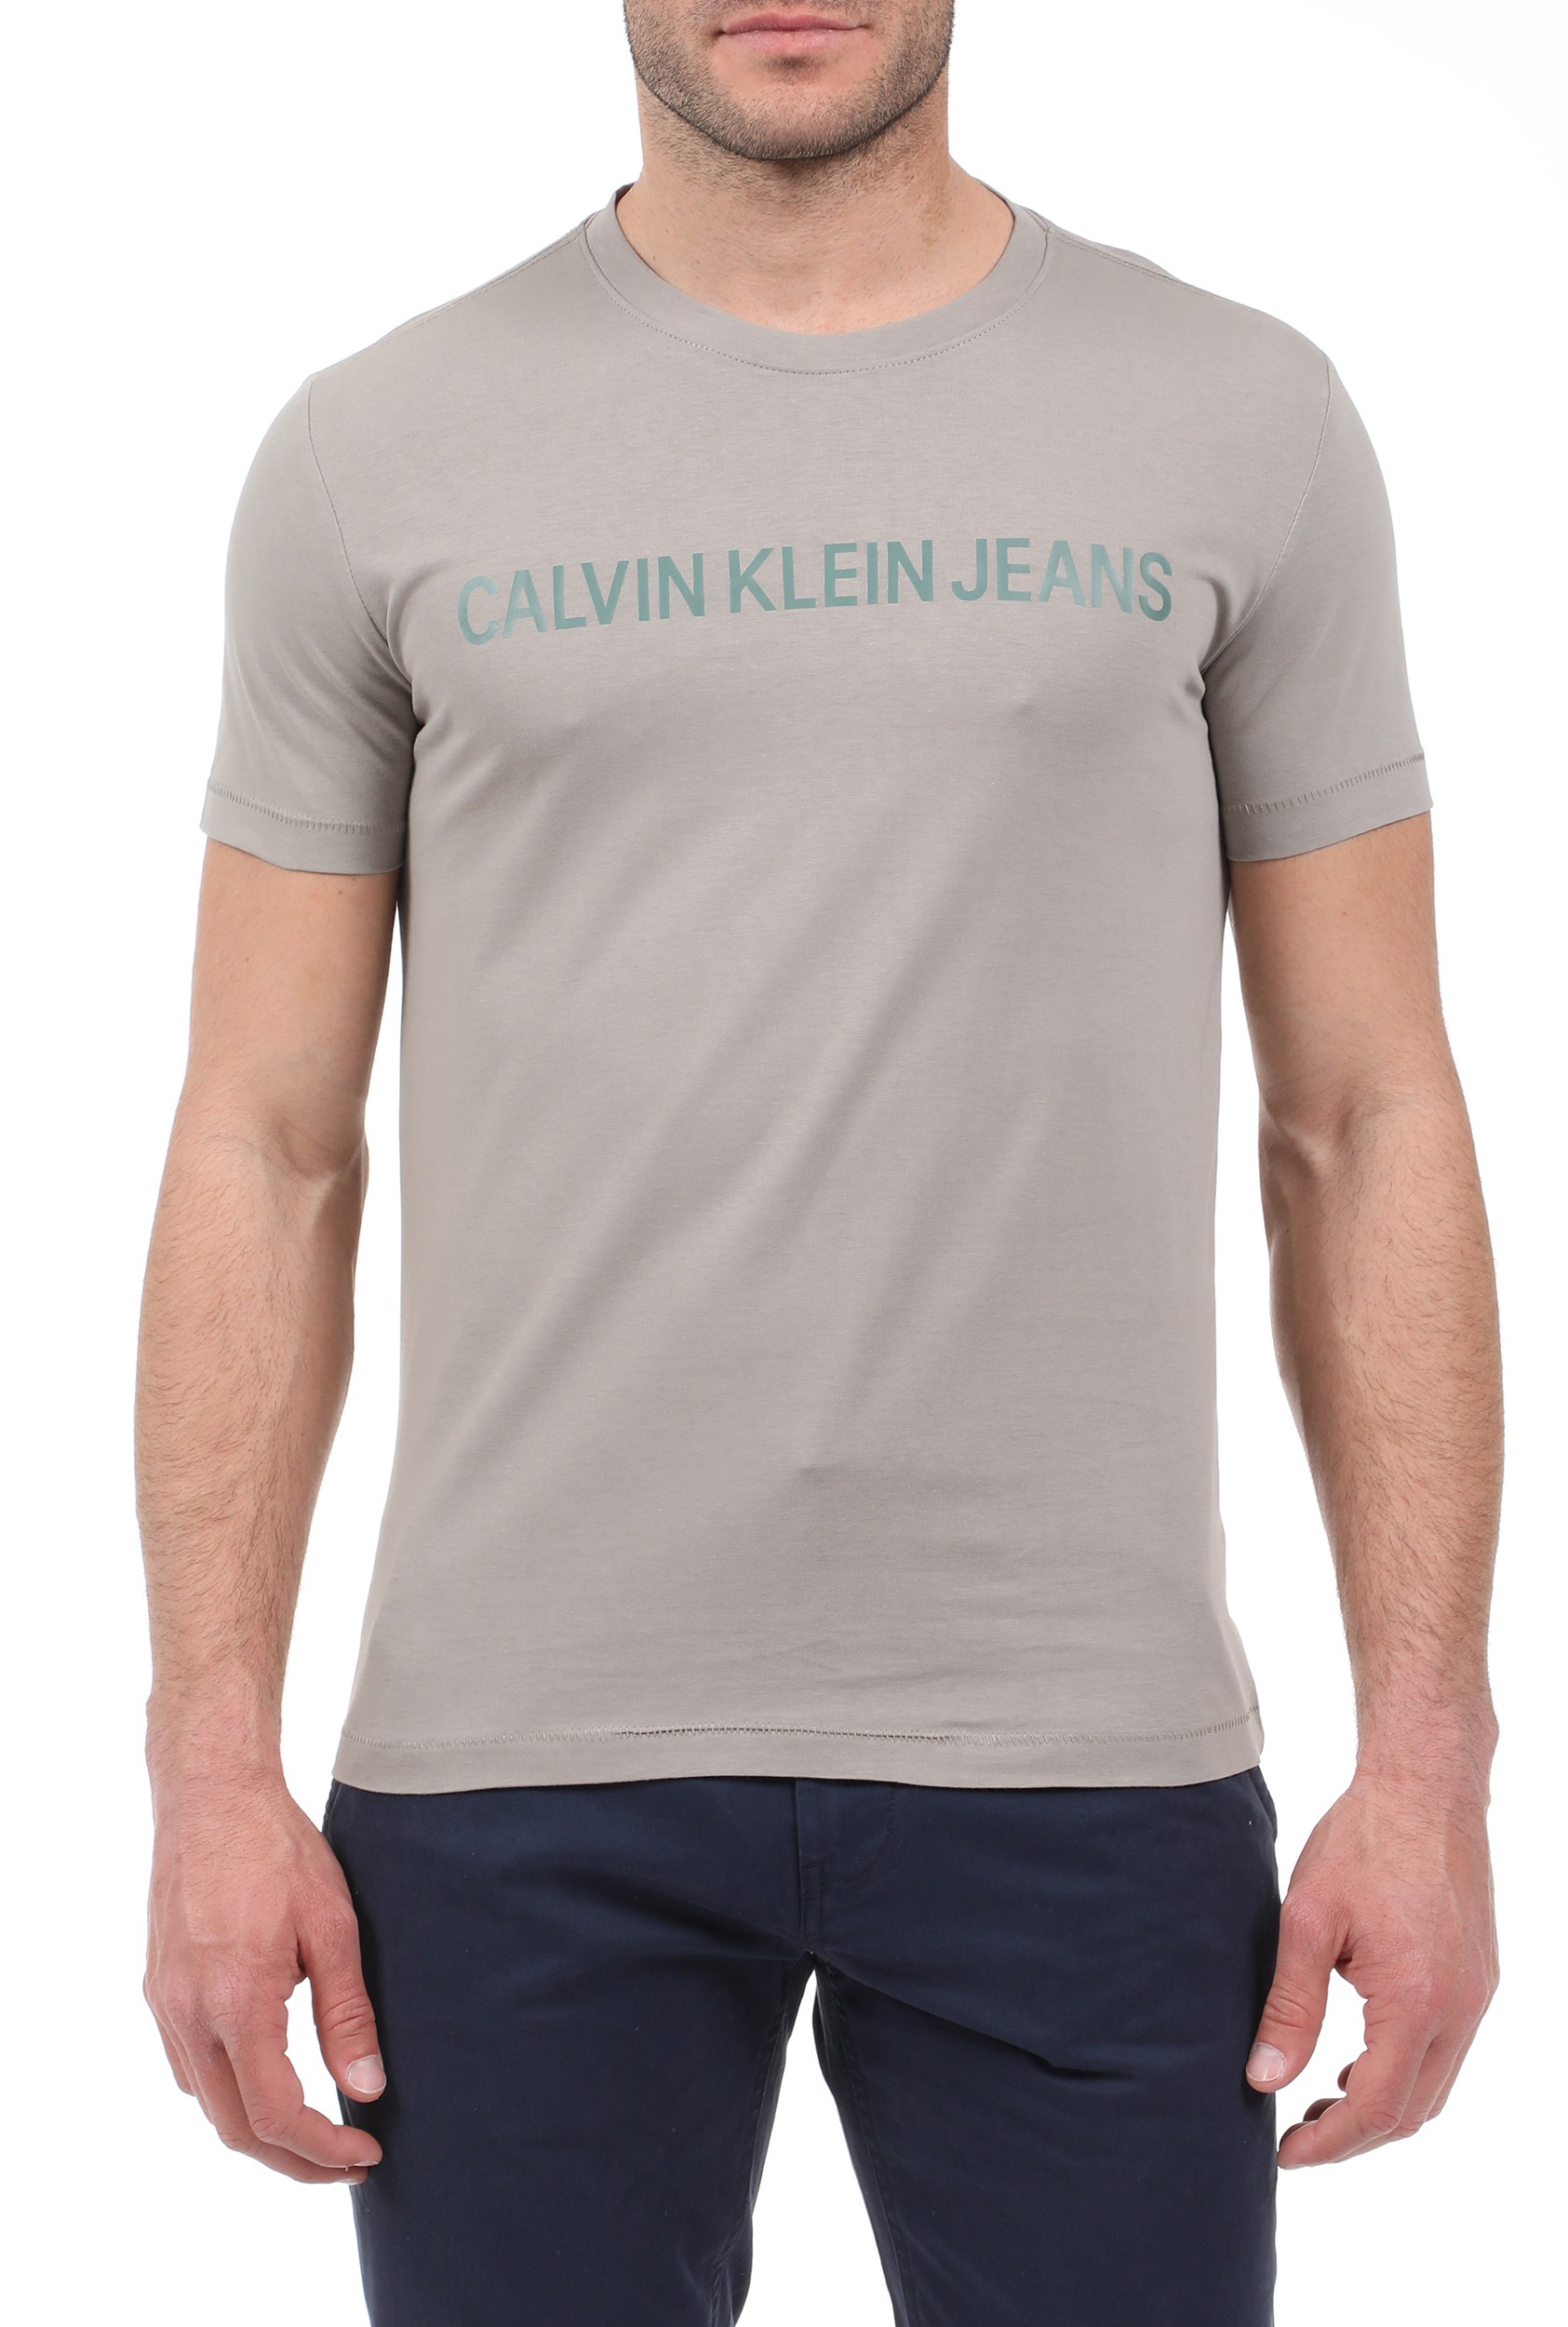 Ανδρικά/Ρούχα/Μπλούζες/Κοντομάνικες CALVIN KLEIN JEANS - Ανδρικό t-shirt CALVIN KLEIN JEANS μπεζ